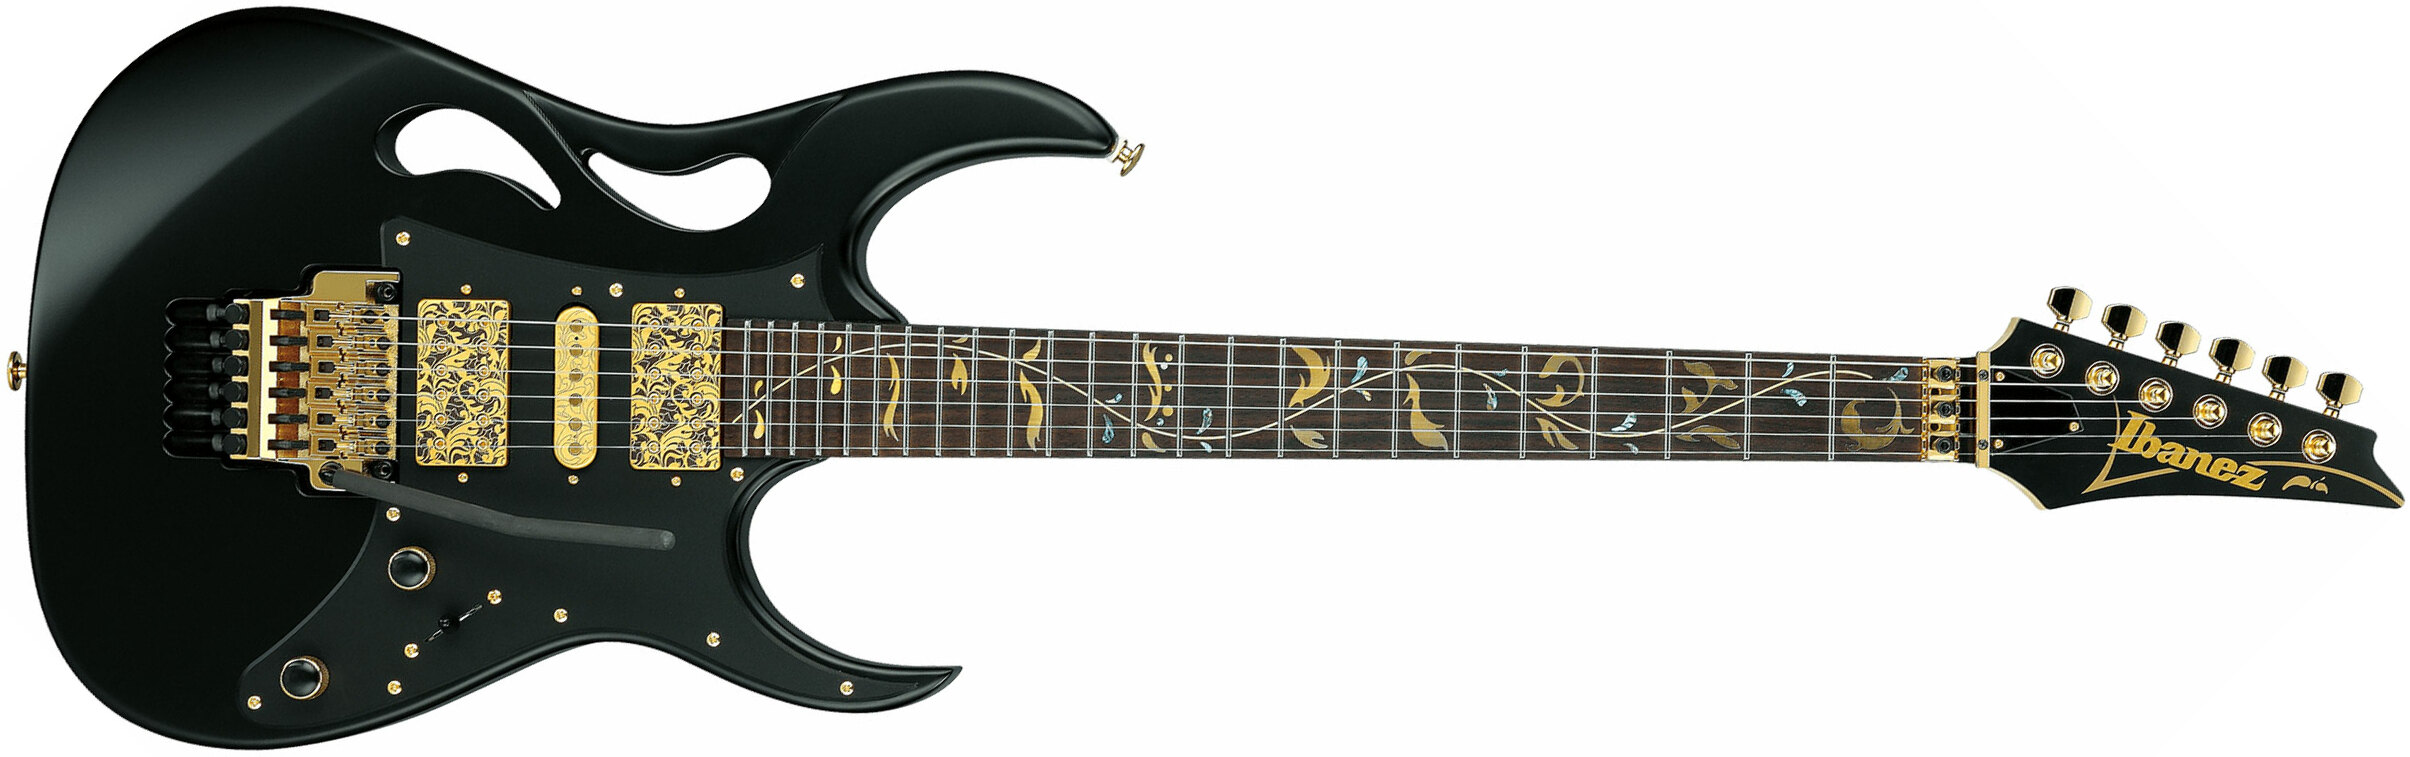 Ibanez Steve Vai Pia3761 Xb Signature Jap 2h Dimarzio Fr Rw - Onyx Black - Guitare Électrique Forme Str - Main picture